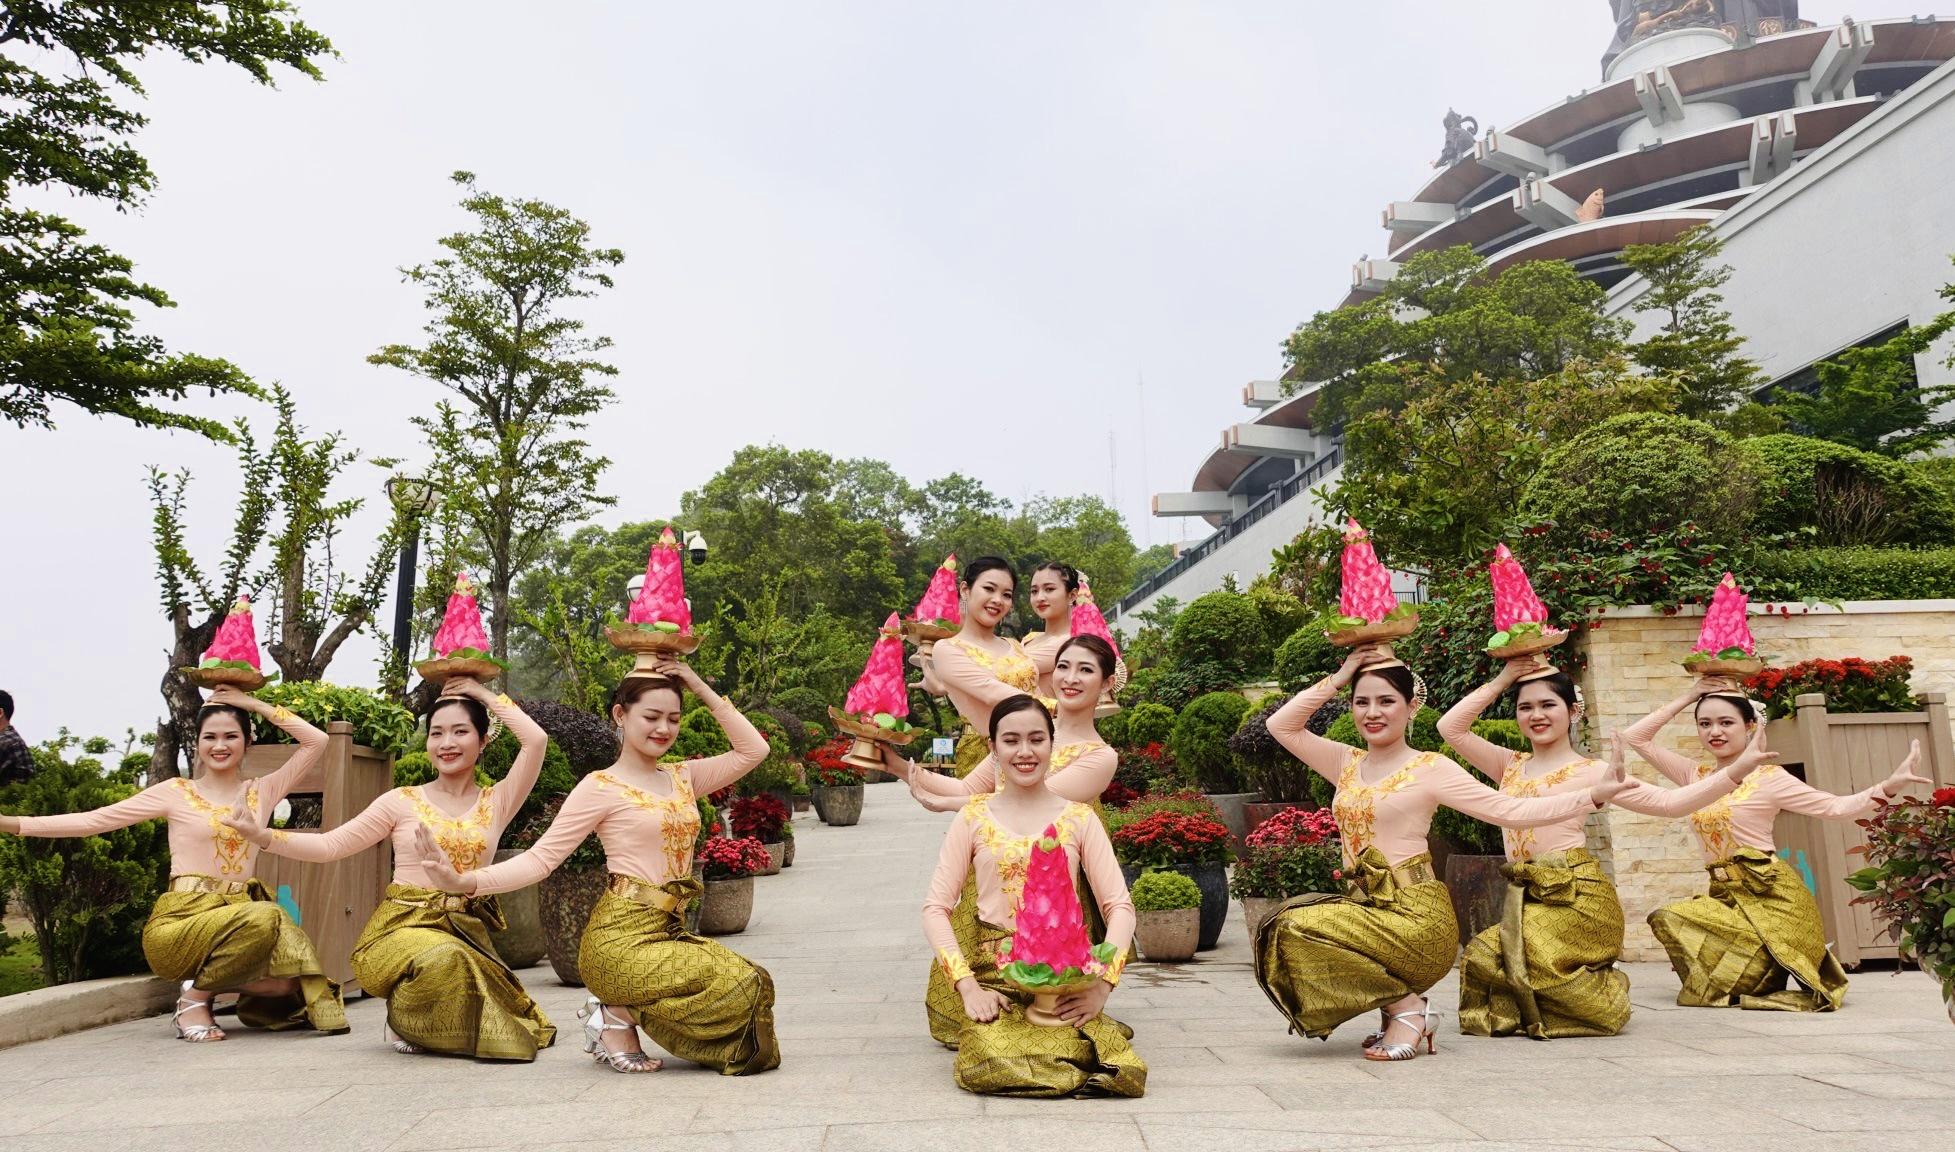 Mục sở thị đặc sắc văn hóa Khmer trên núi Bà Đen trong tháng 4 - Ảnh 1.